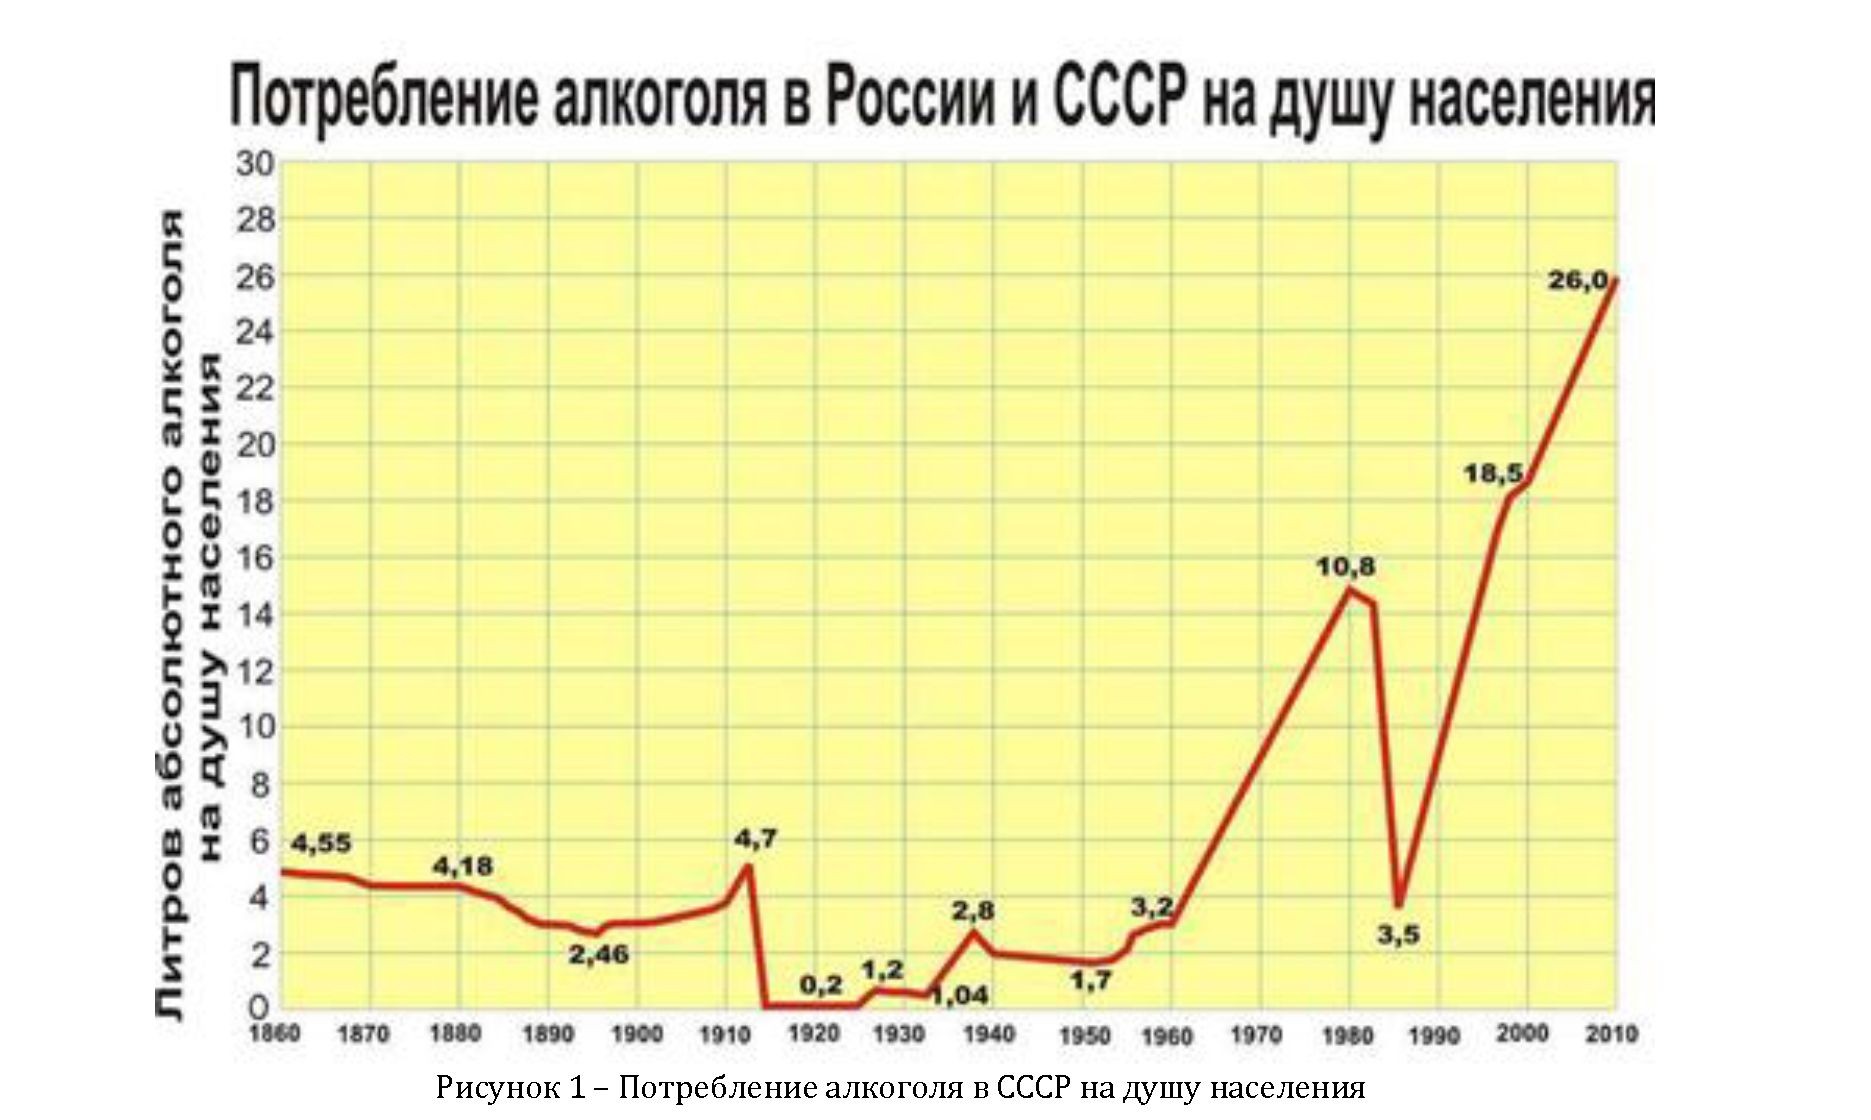 Динамику употребления алкоголя в СССР на душу населения